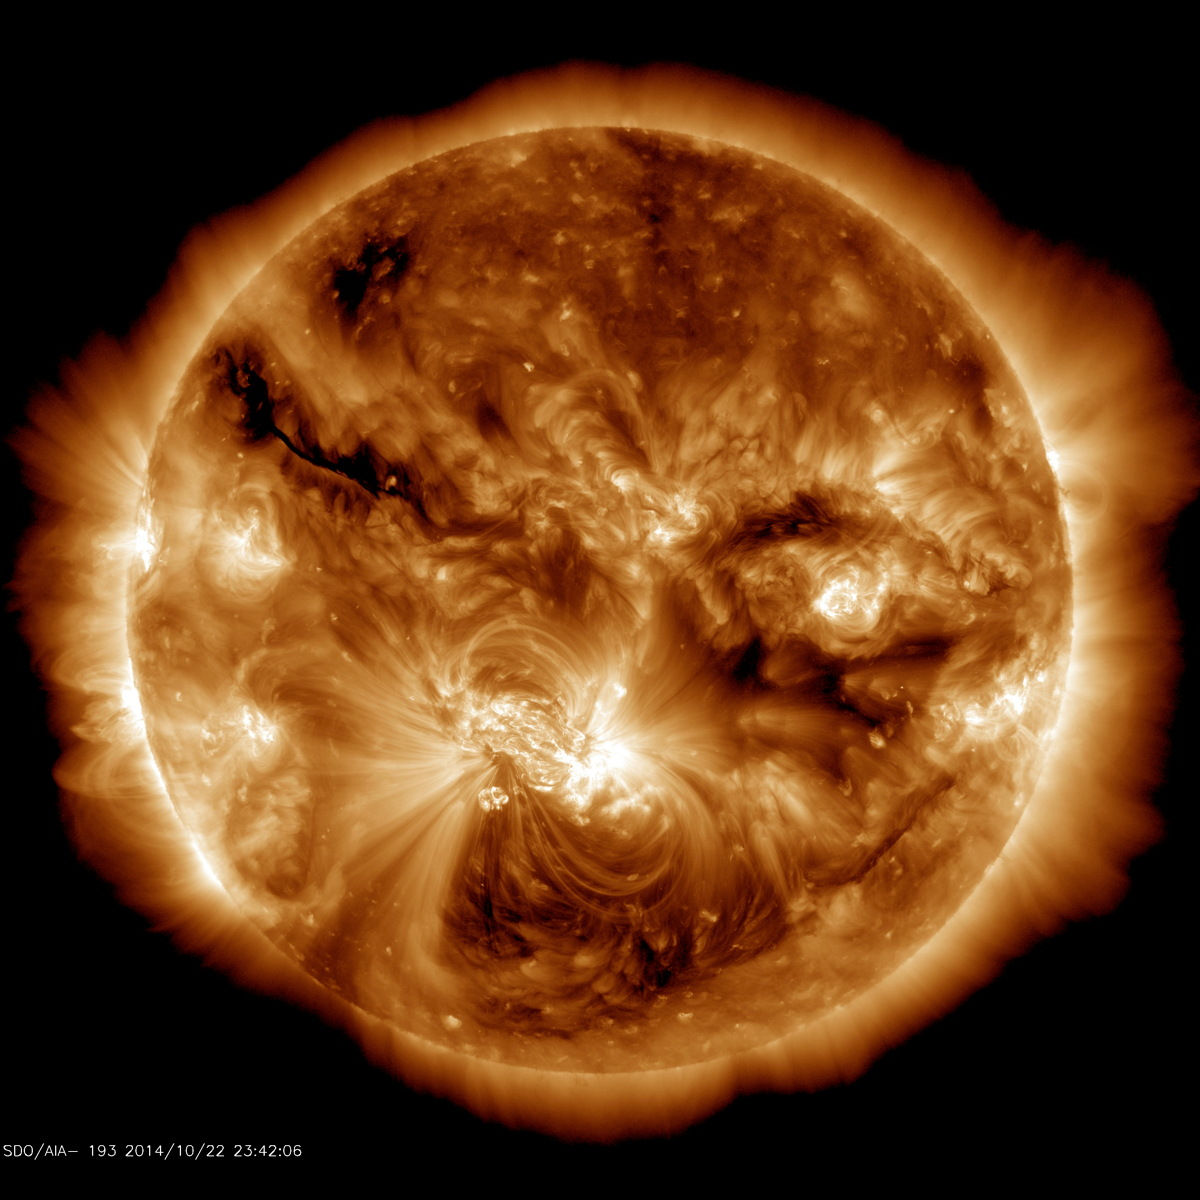 De grootste zonnevlekkengroep in 24 jaar verscheen in oktober 2014 op de zon. De zonnevlekken zitten hier onder het helder actieve gebied in het midden van de zon.